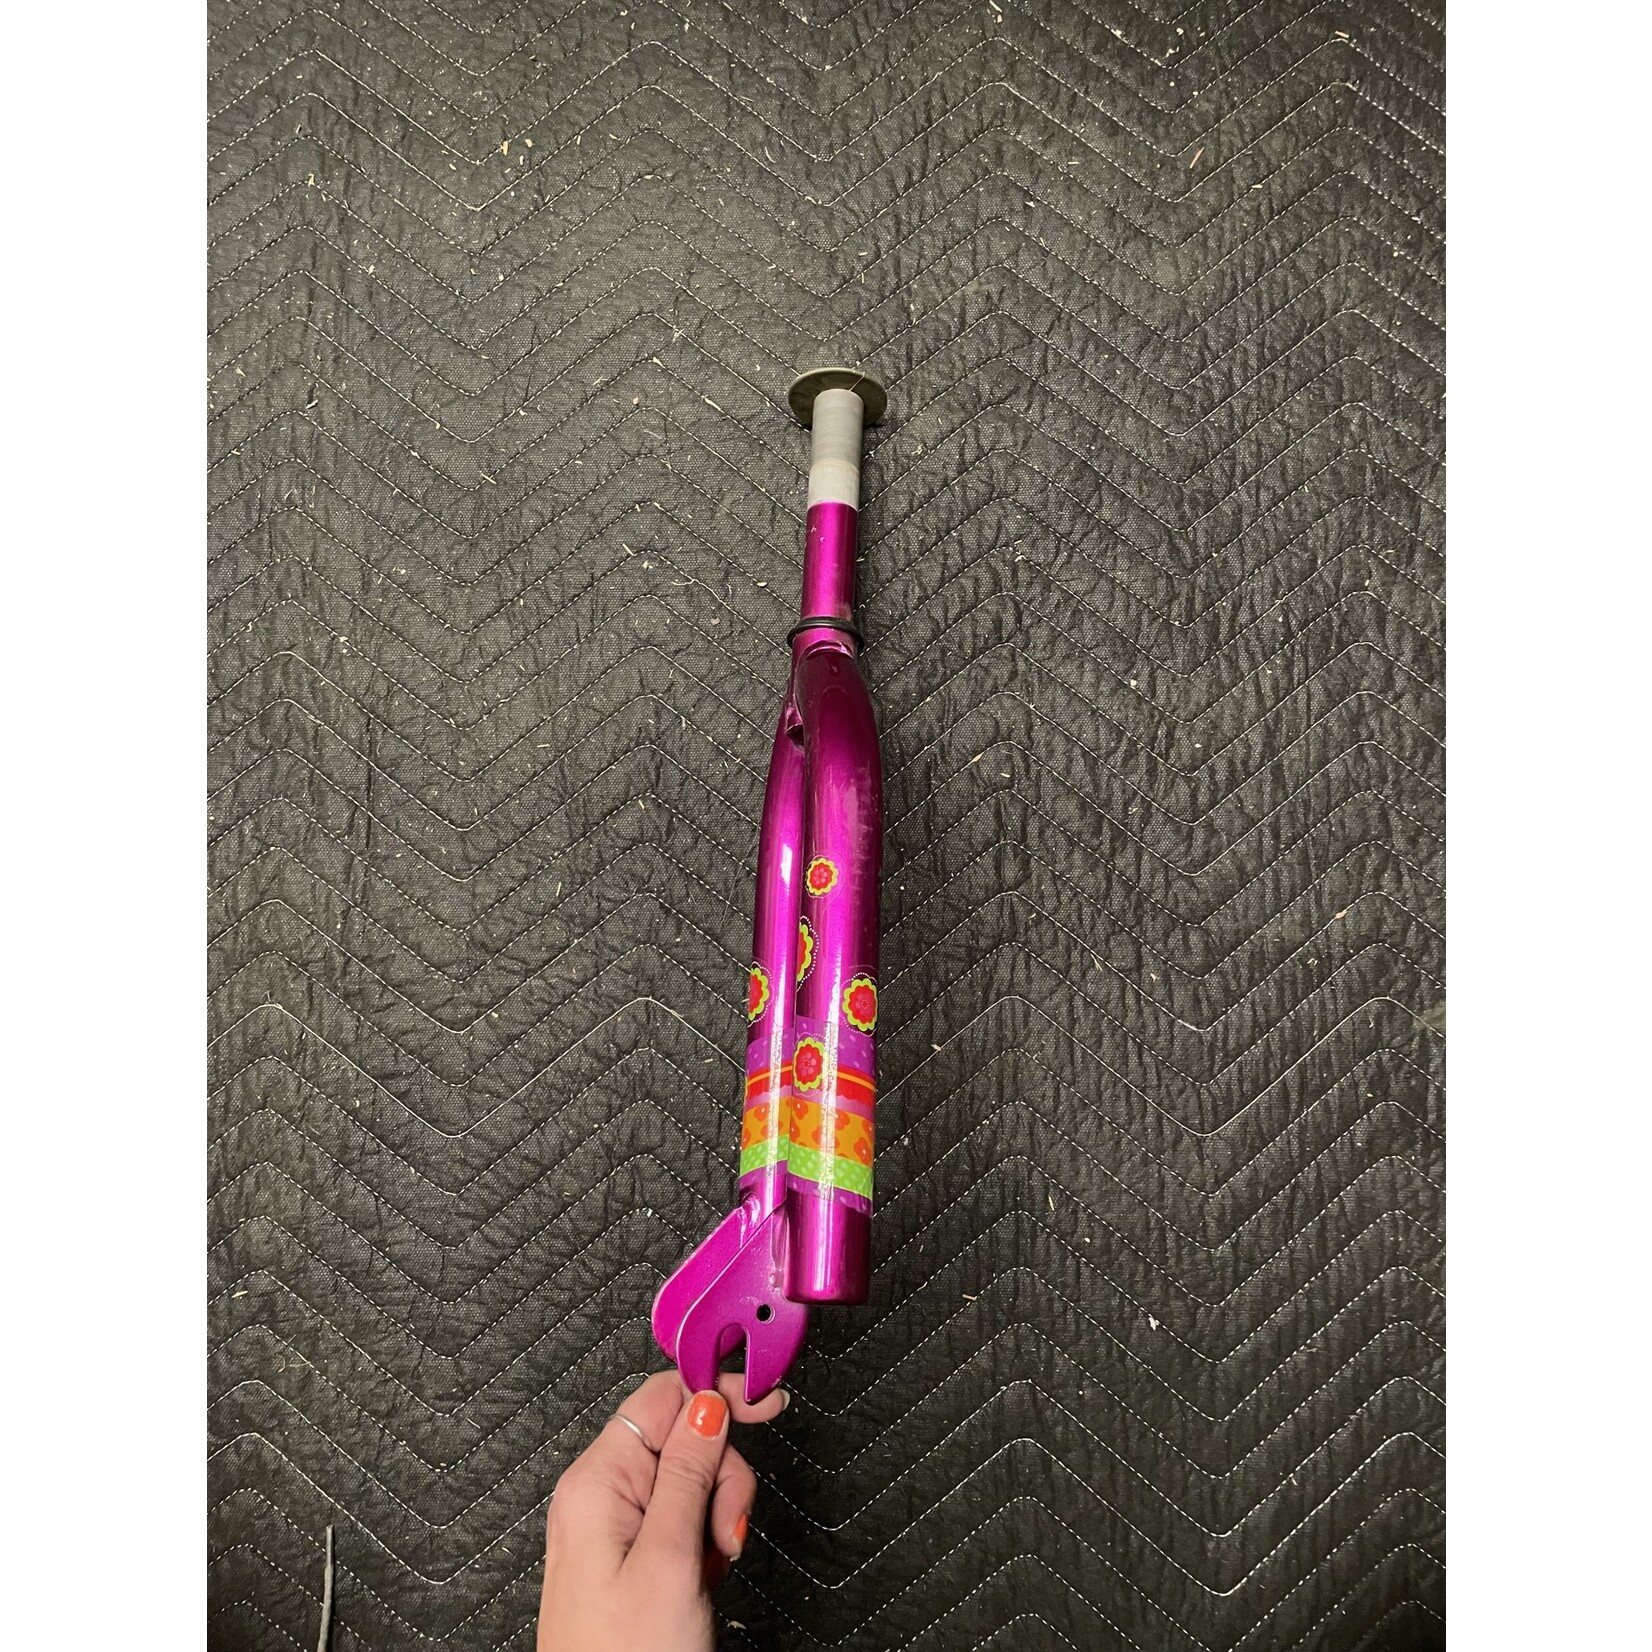 1” x  5 1/8” Rigid 18" Bicycle Fork (Purple w/ Flowers)